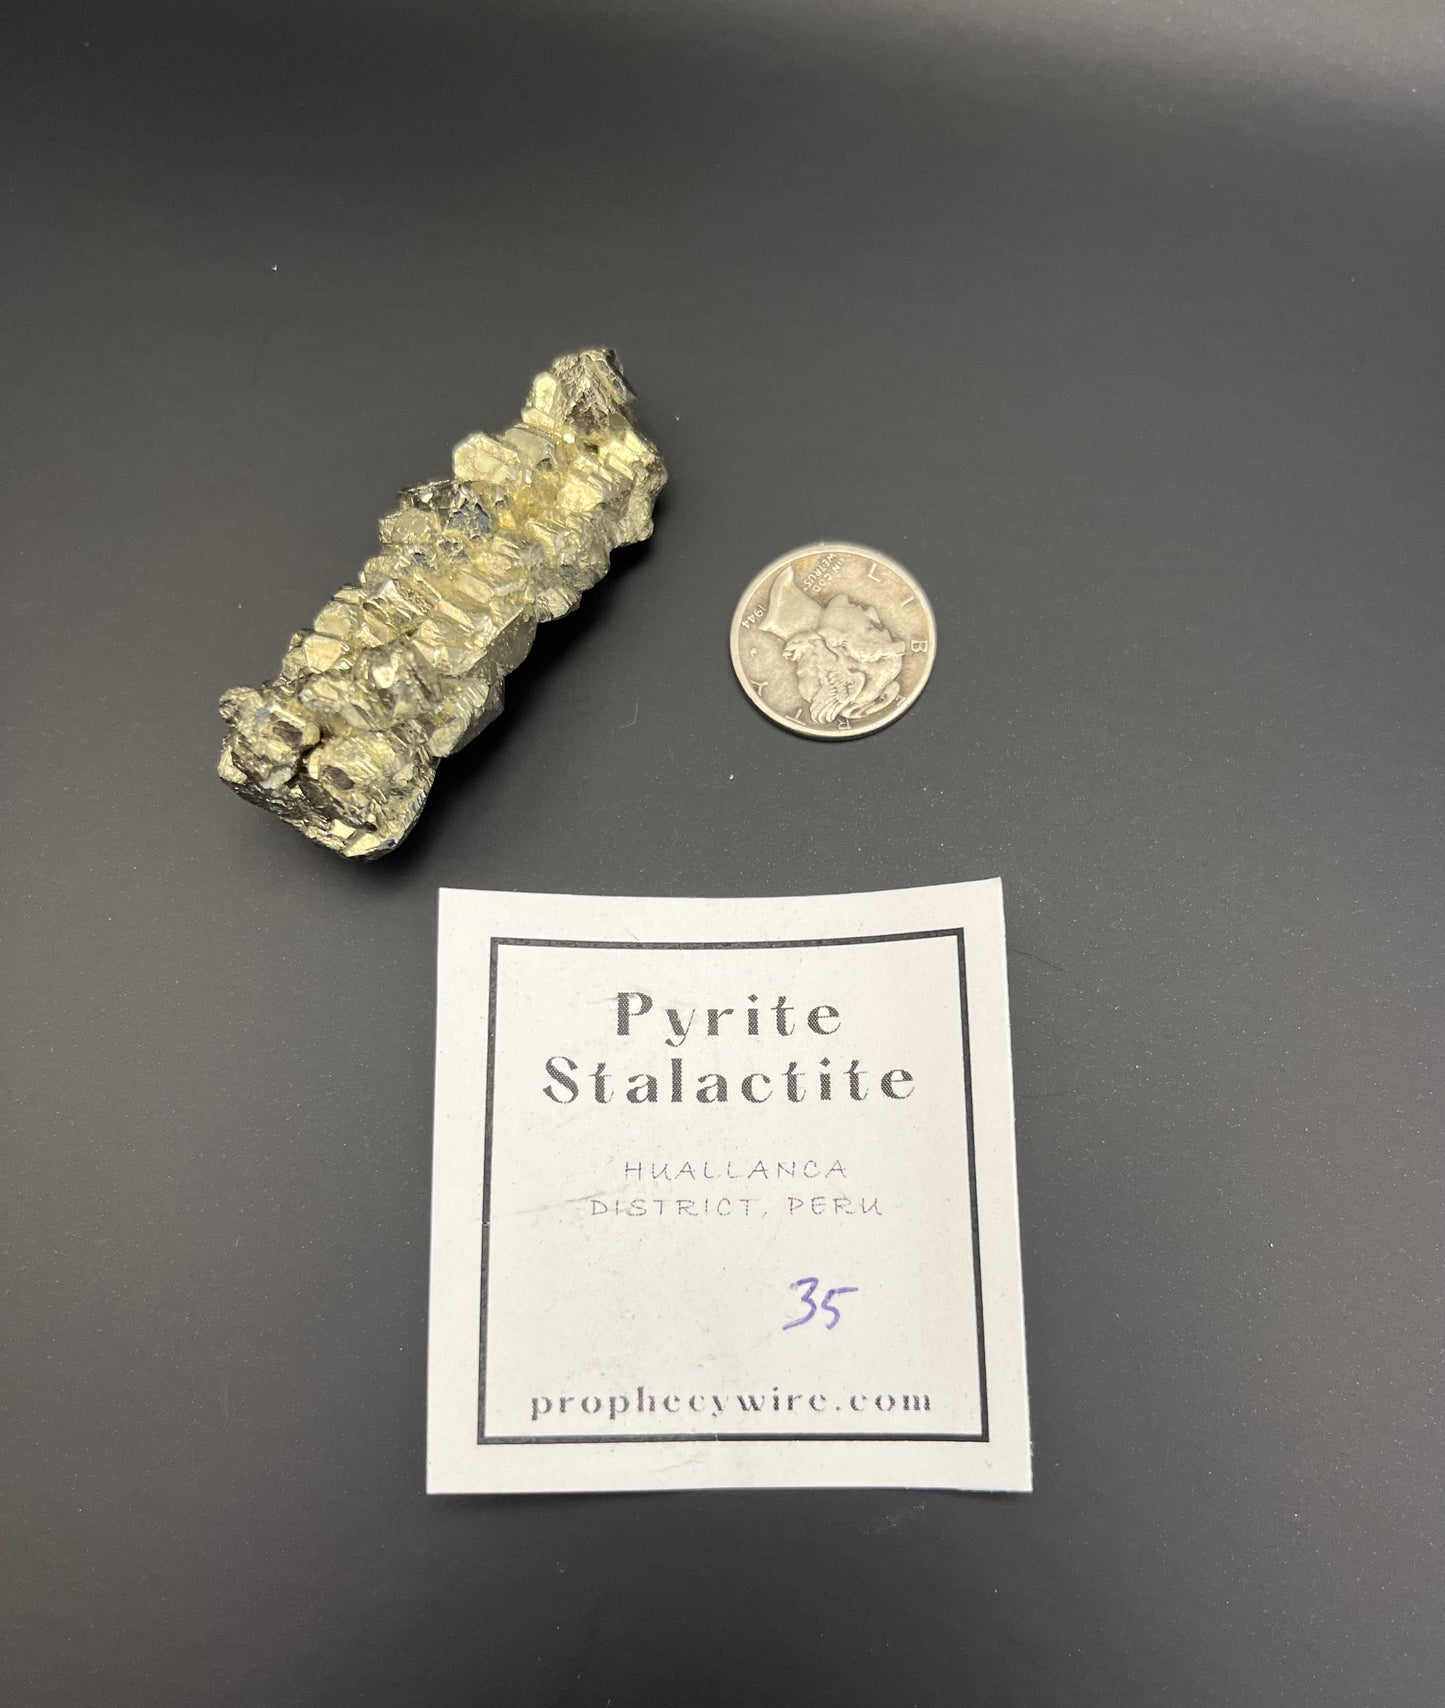 Pyrite stalactites